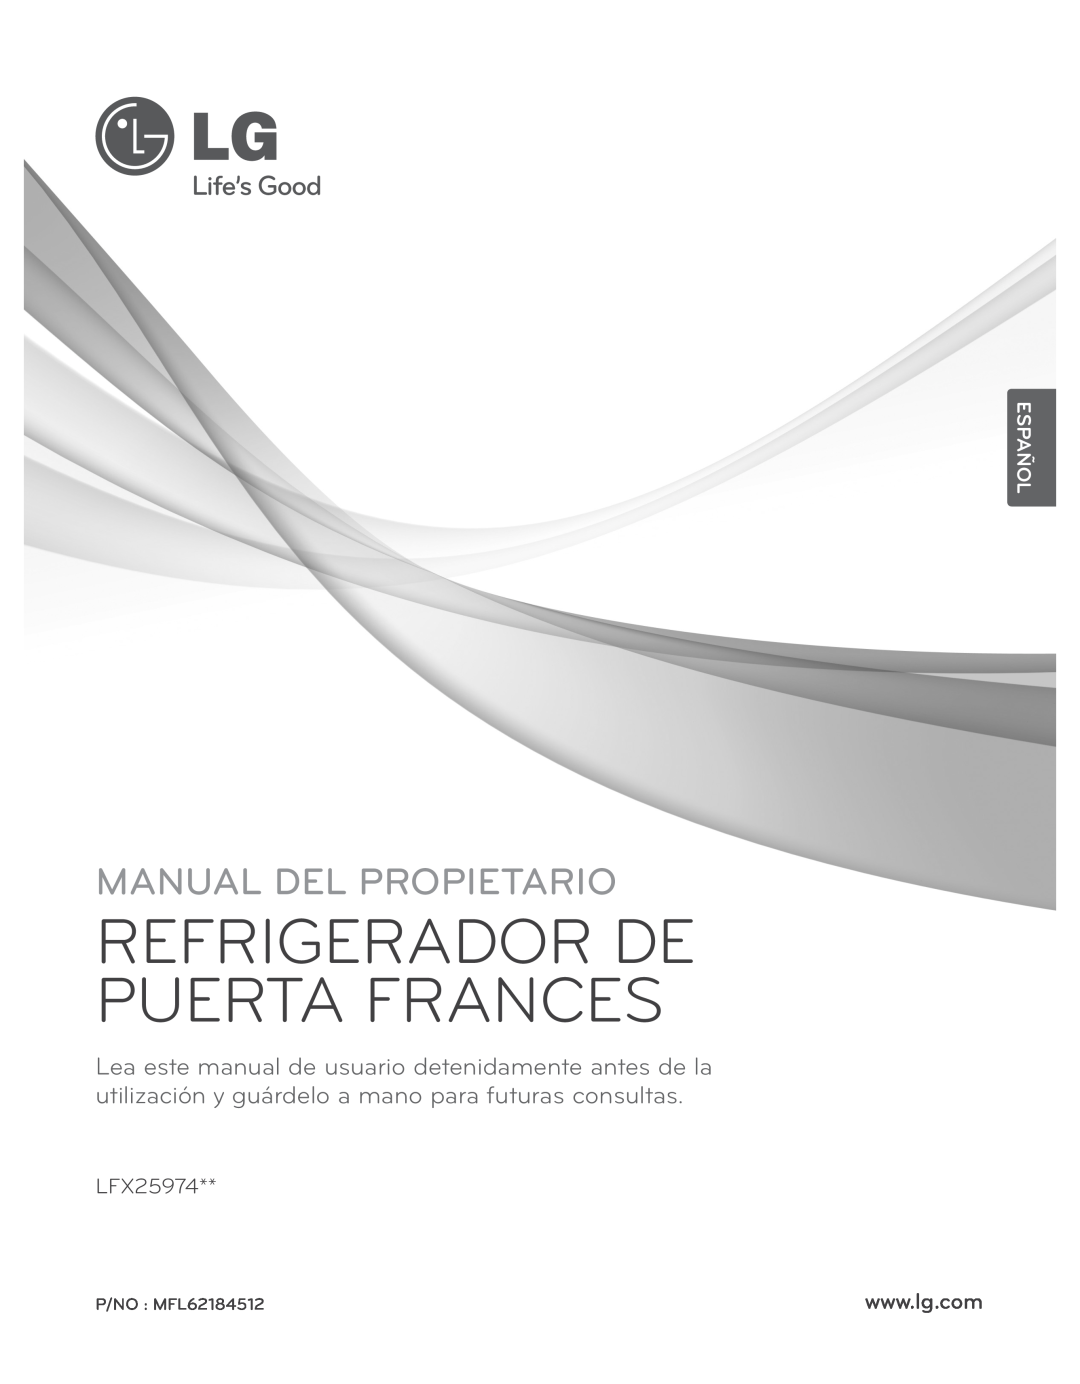 LG Electronics LFX25974ST, LFX25974SB Refrigerador De Puerta Frances, Manual Del Propietario, Español, P/NO : MFL62184512 